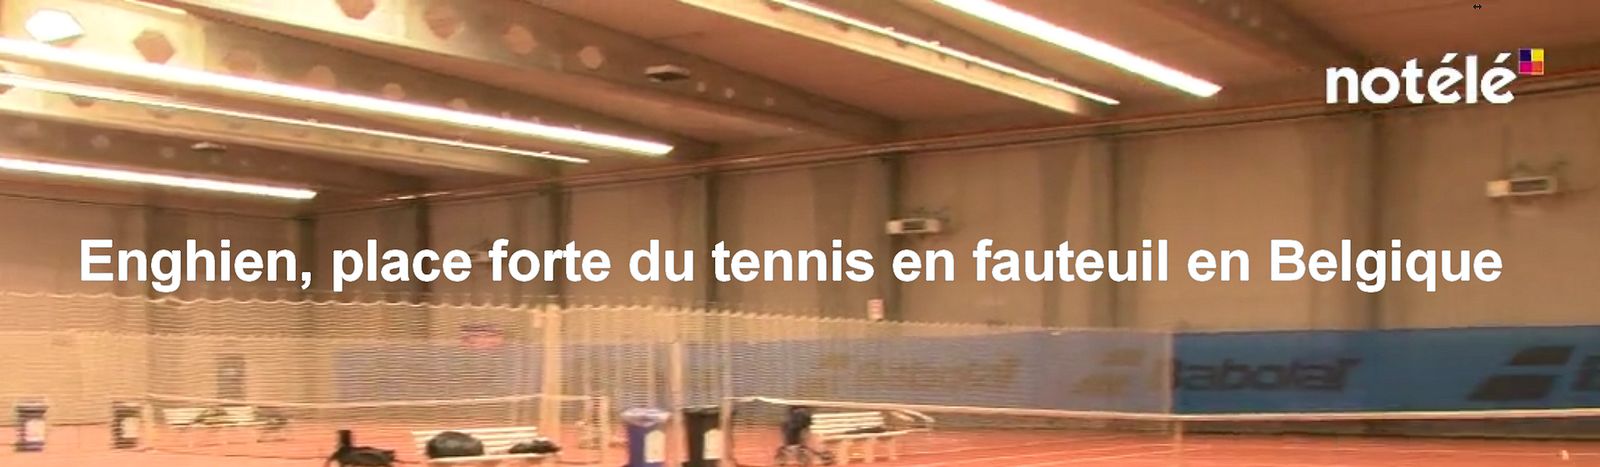 Tennis fauteuil roulant - Enghien - 202109